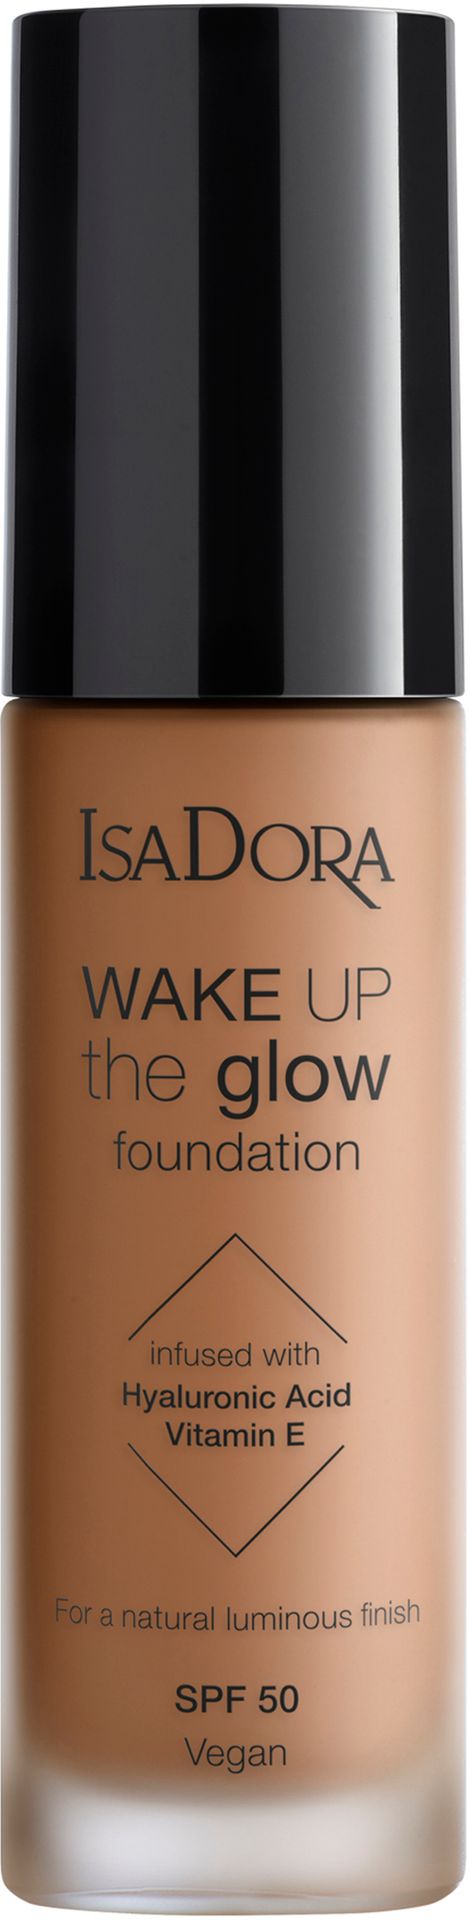 IsaDora Wake Up the Glow Foundation SPF50 7W